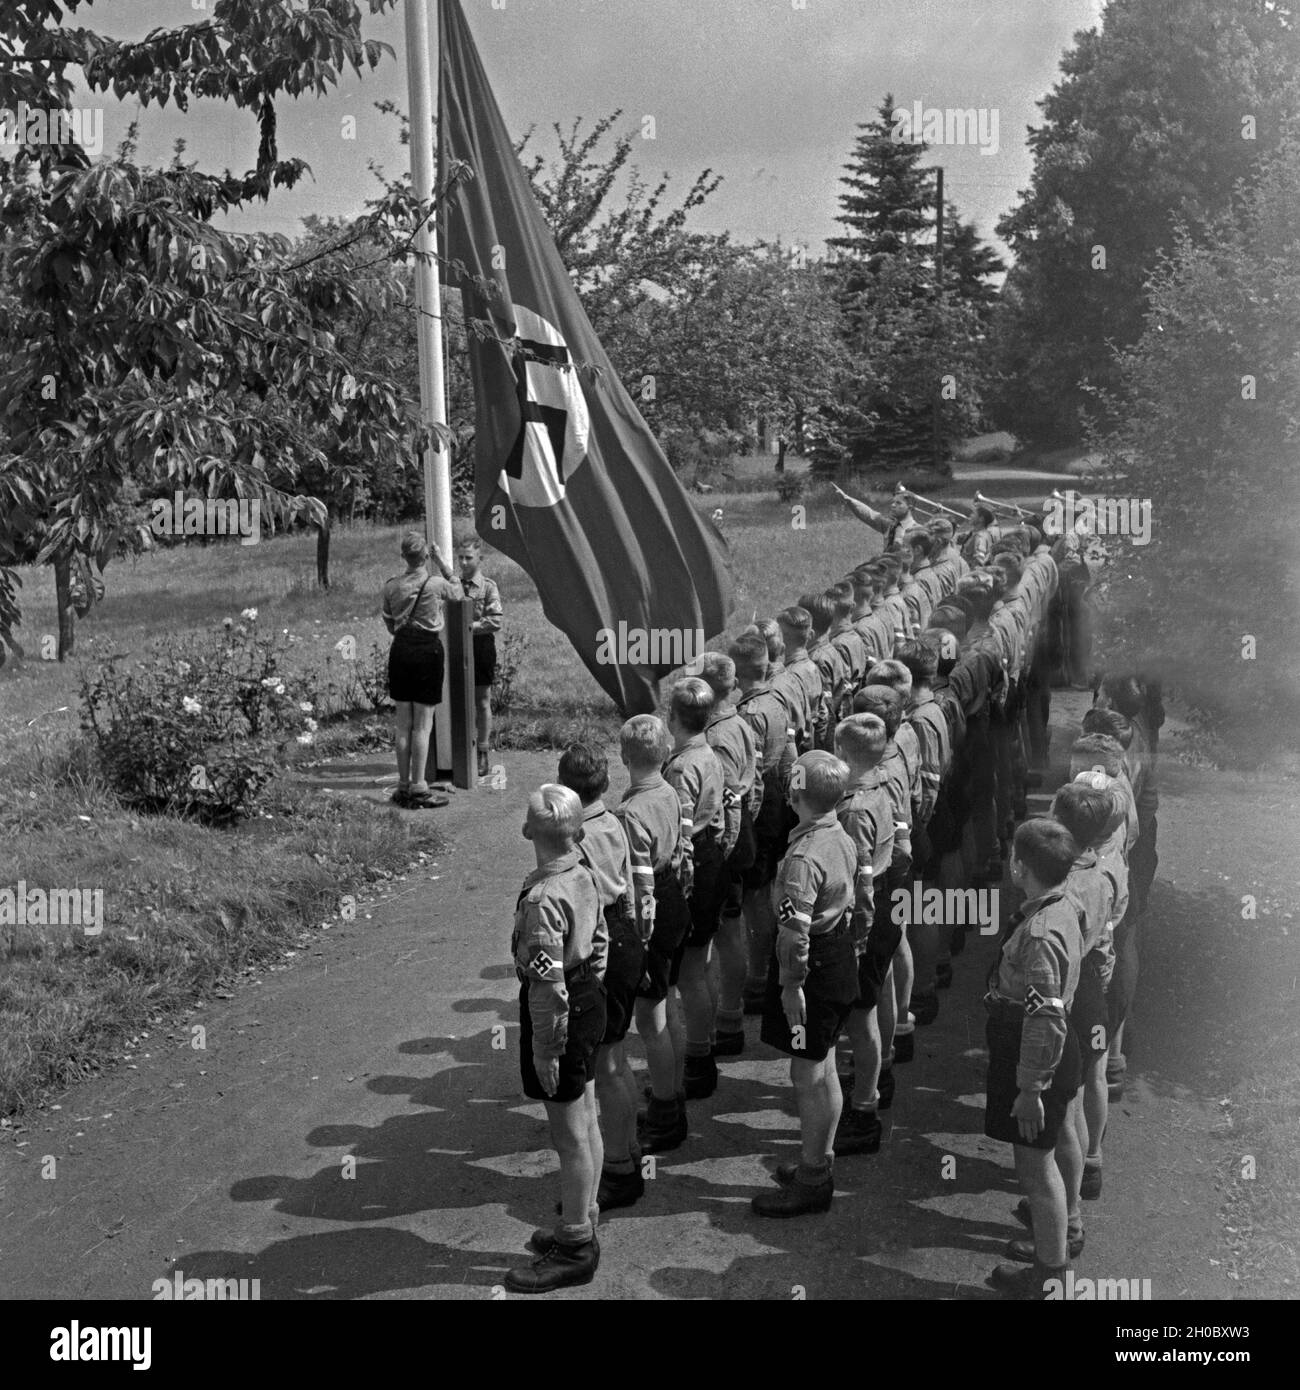 Morgendlicher Fahnenappell im Jungen Landjahr Lager in Bevensen in der Lüneburger Heide, Deutschland 1930er Jahre. Matutinal flag muster at the Hitler youth camp at Bevensen, Germany 1930s. Stock Photo